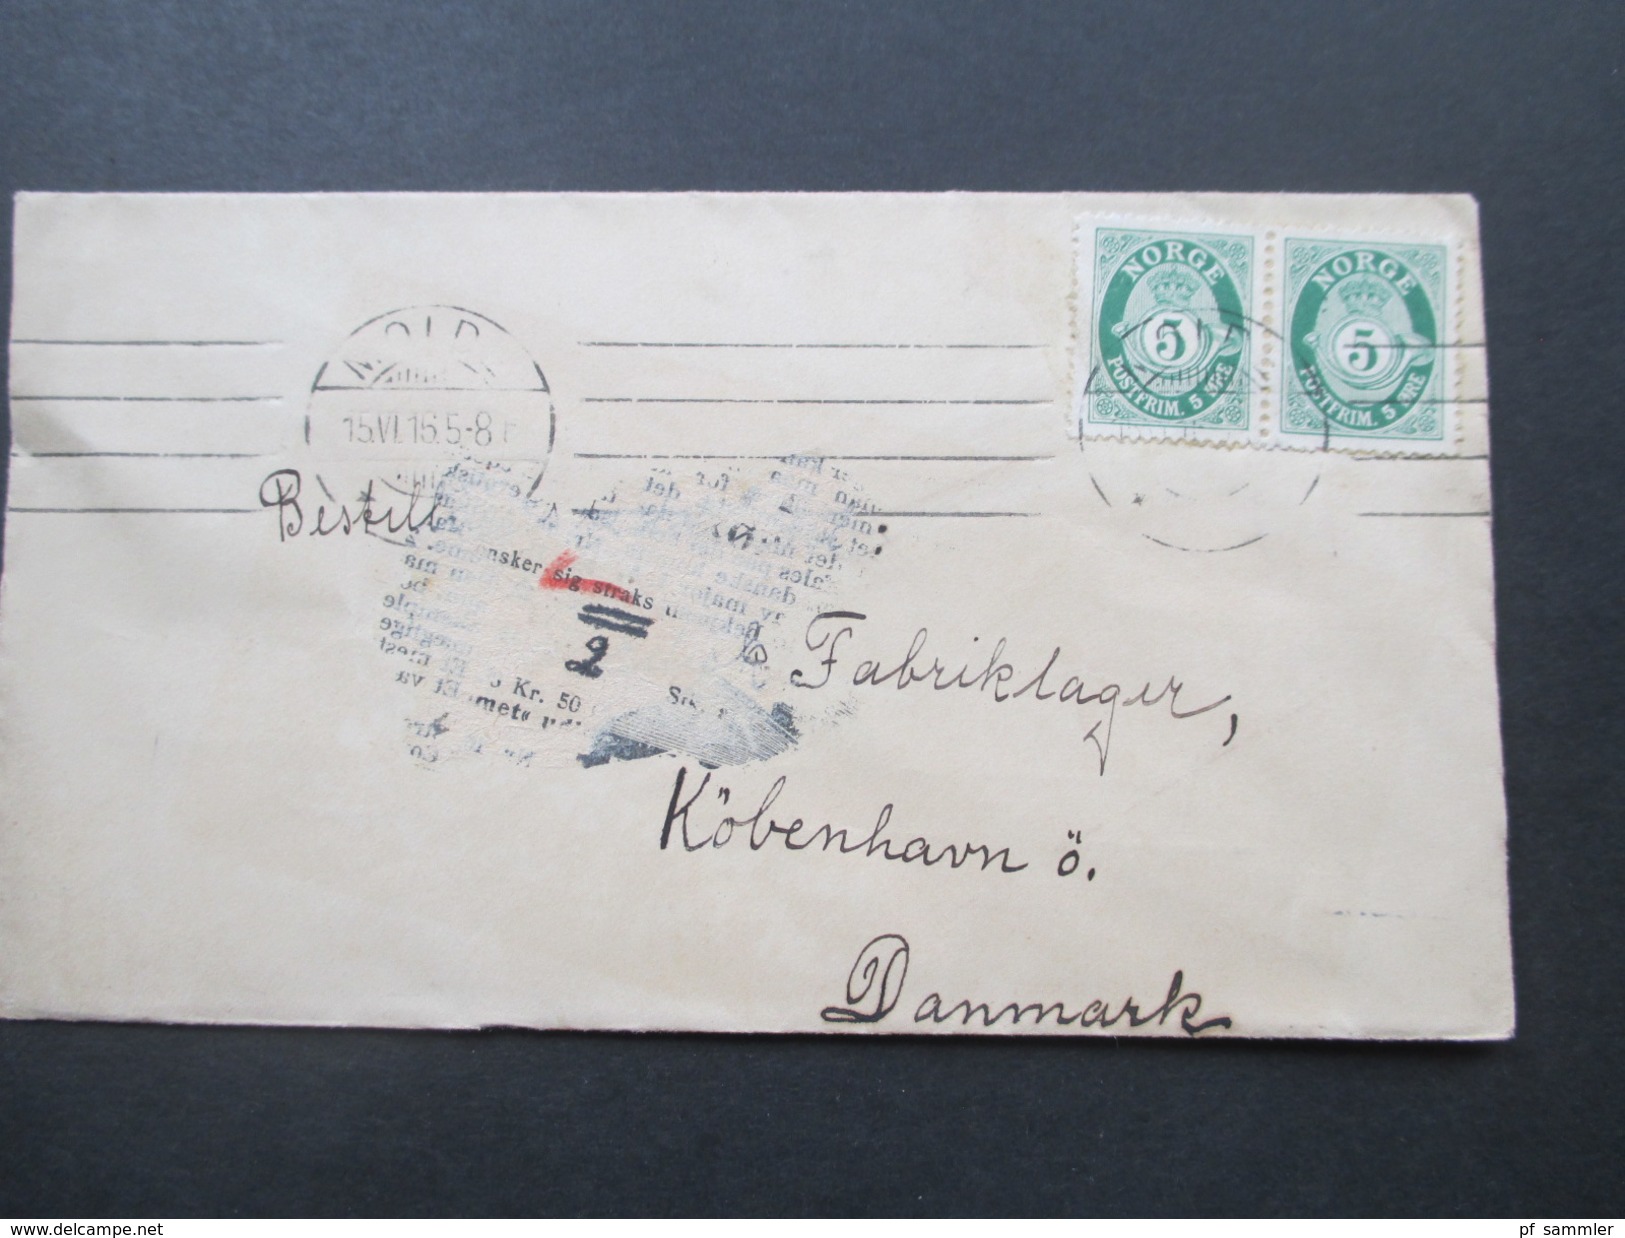 Norwegen 1915 Freimarken Posthorn Waagerechtes Paar. Mold - Kopenhagen. Strichstempel / 4 Striche / O - Covers & Documents